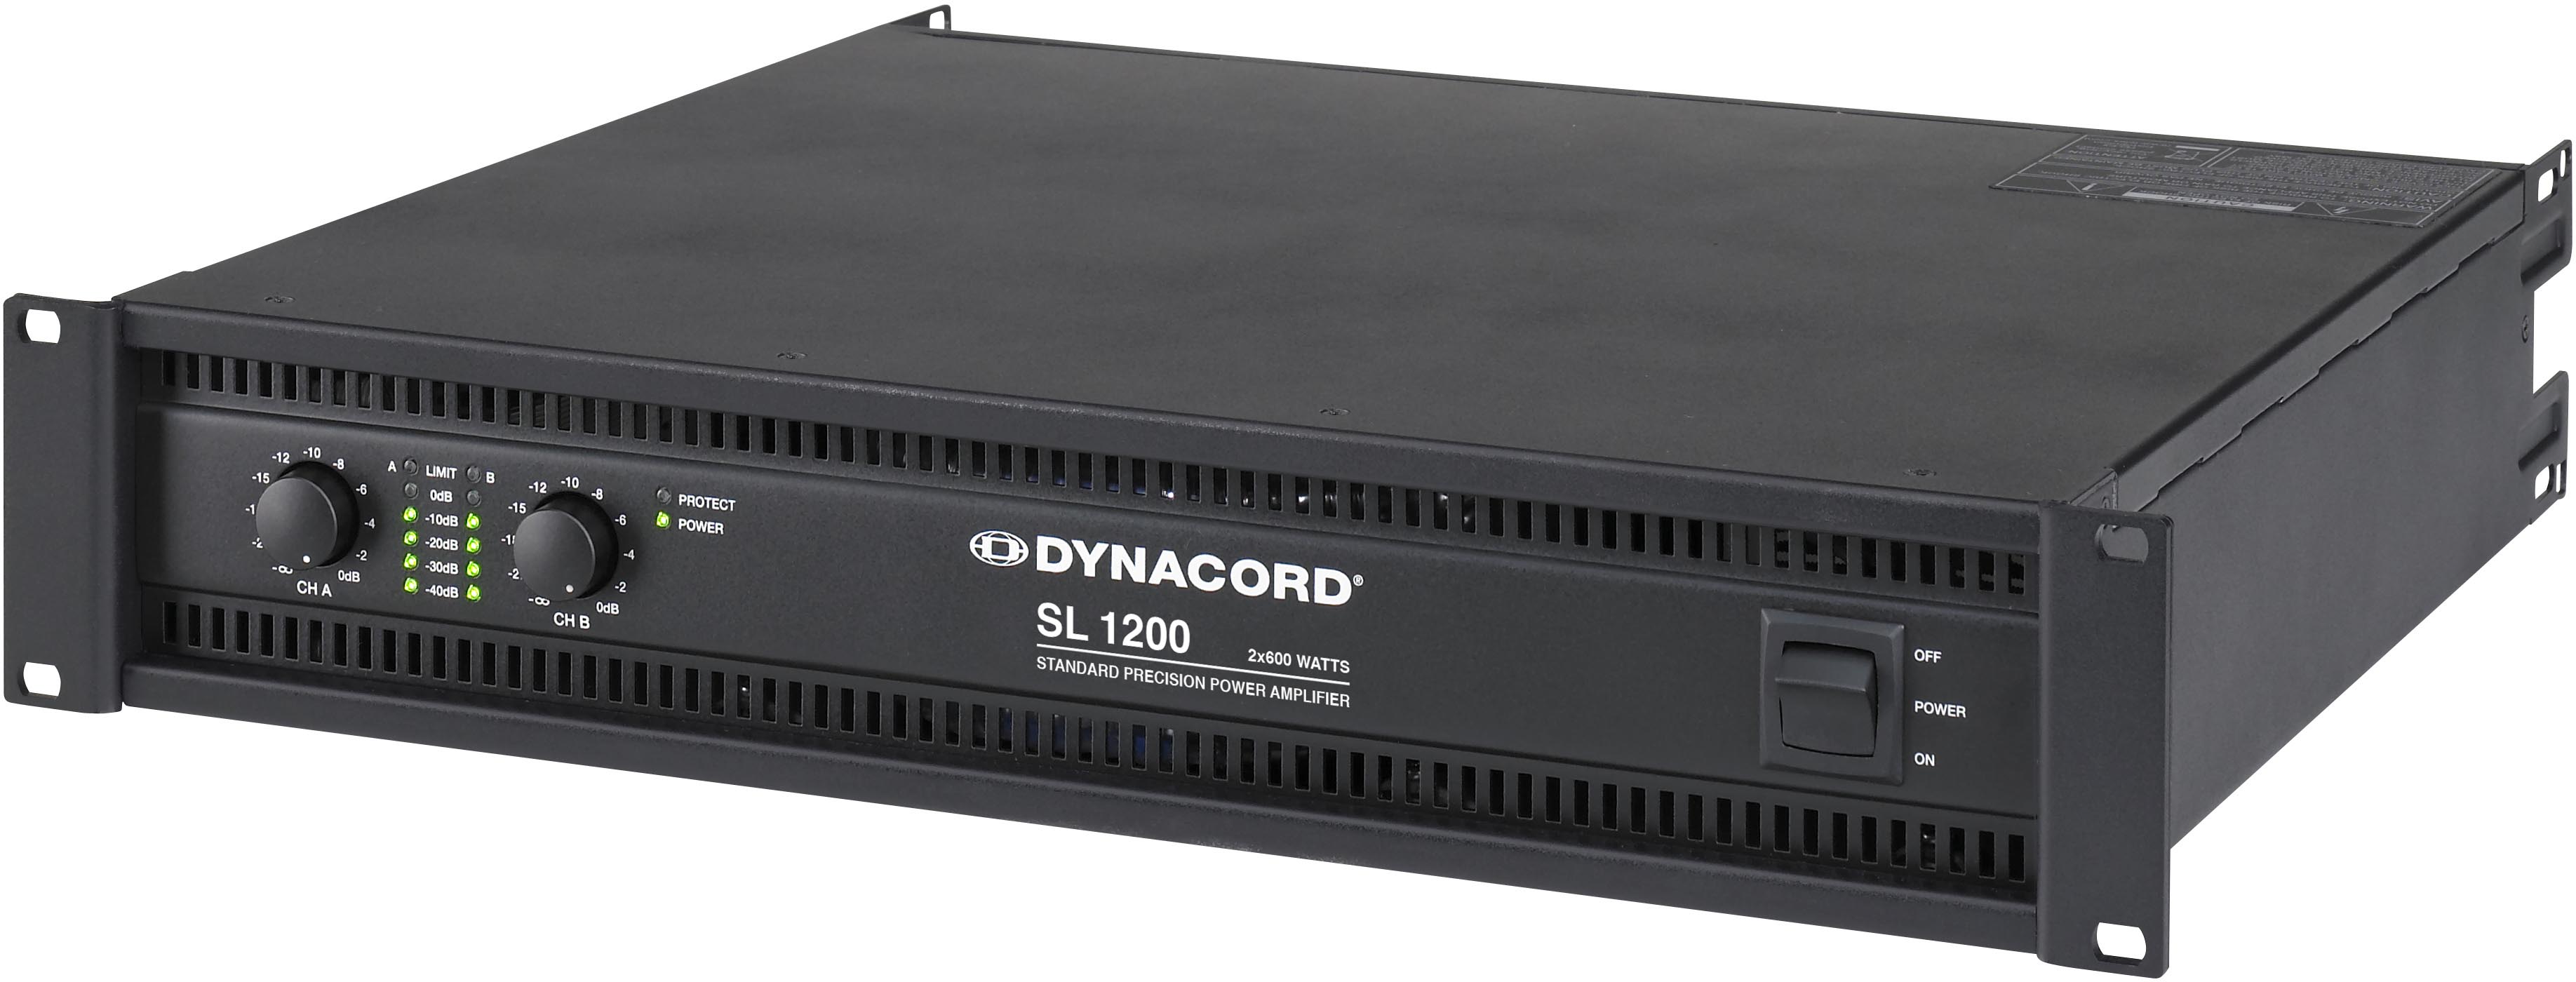 DYNACORD - SL 1200 آمپلی فایر